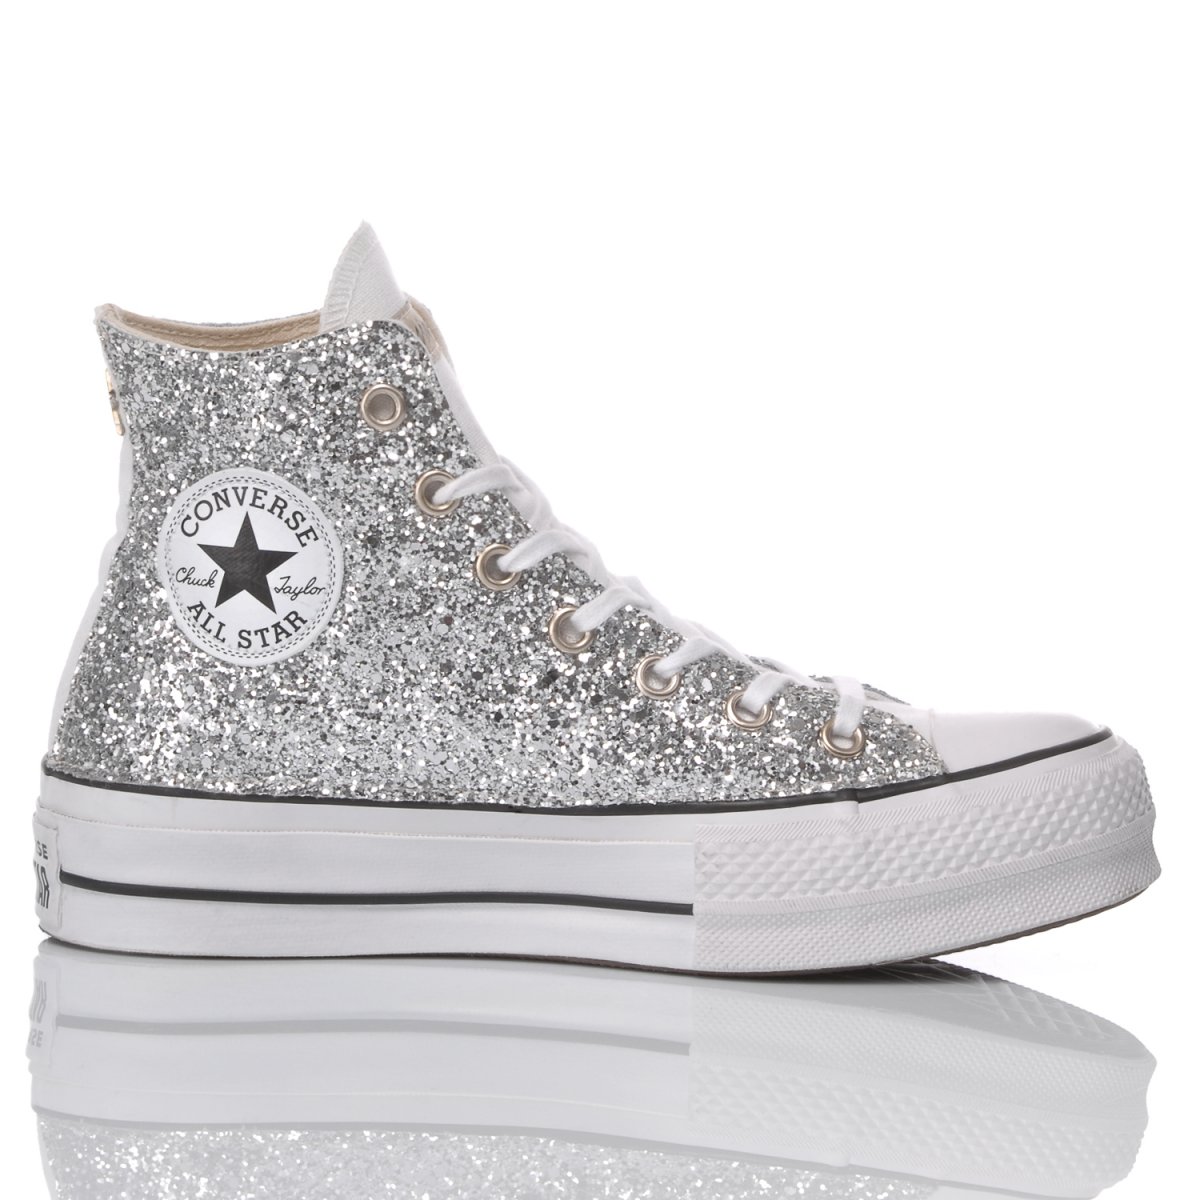 sparkly grey converse